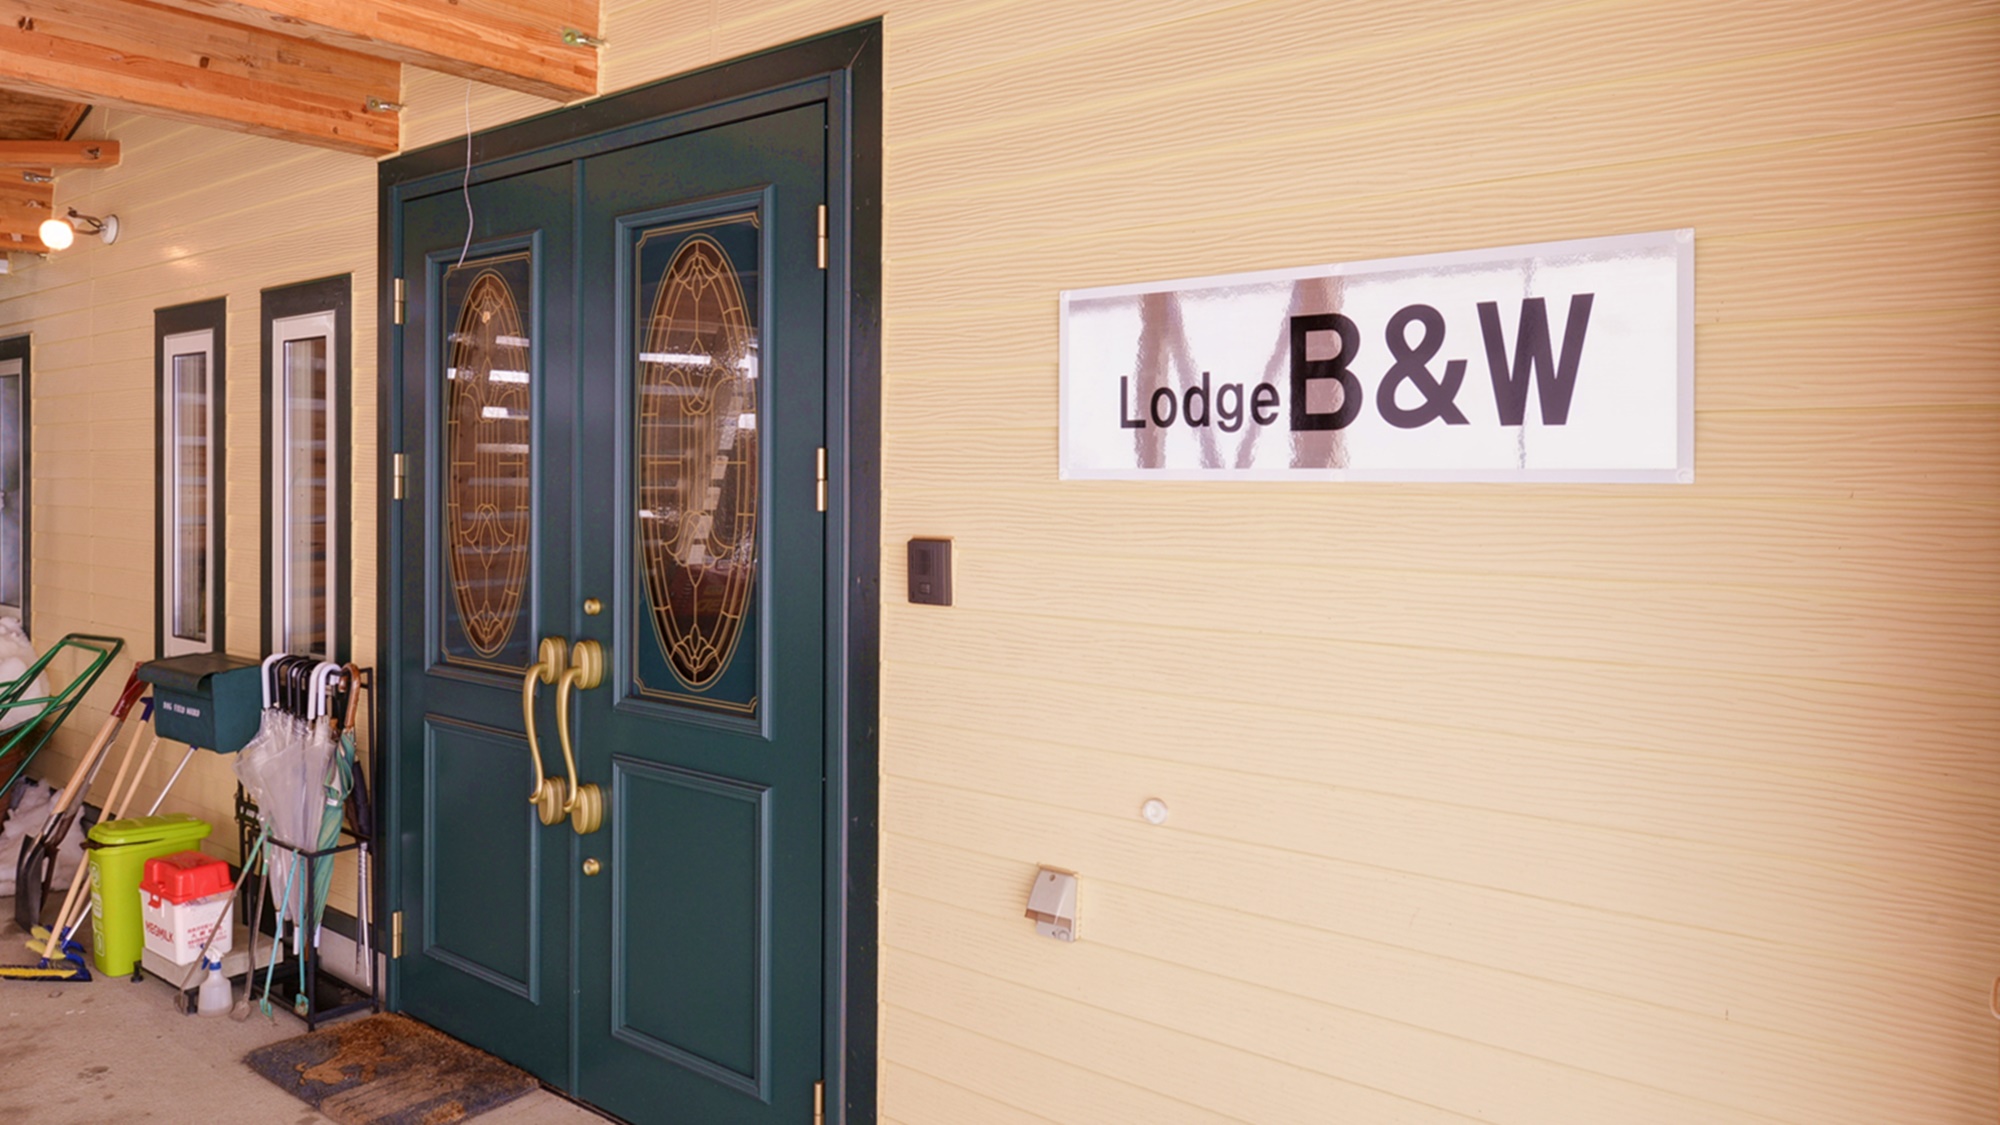 Lodge B&W